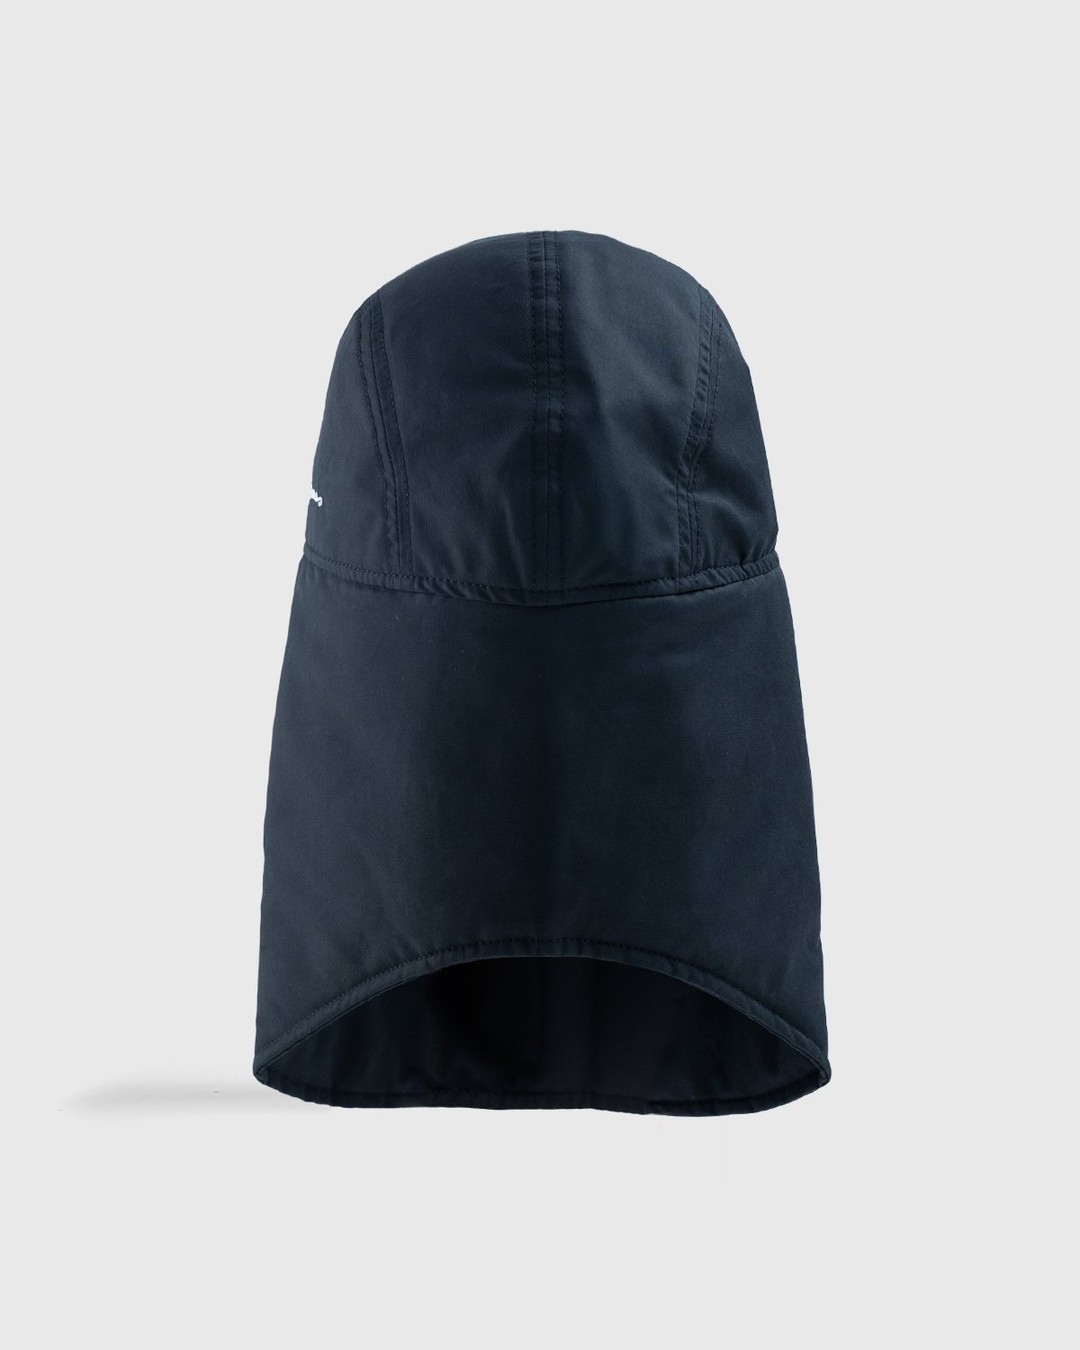 JACQUEMUS – La Casquette Cagoule Black - Hats - Black - Image 4